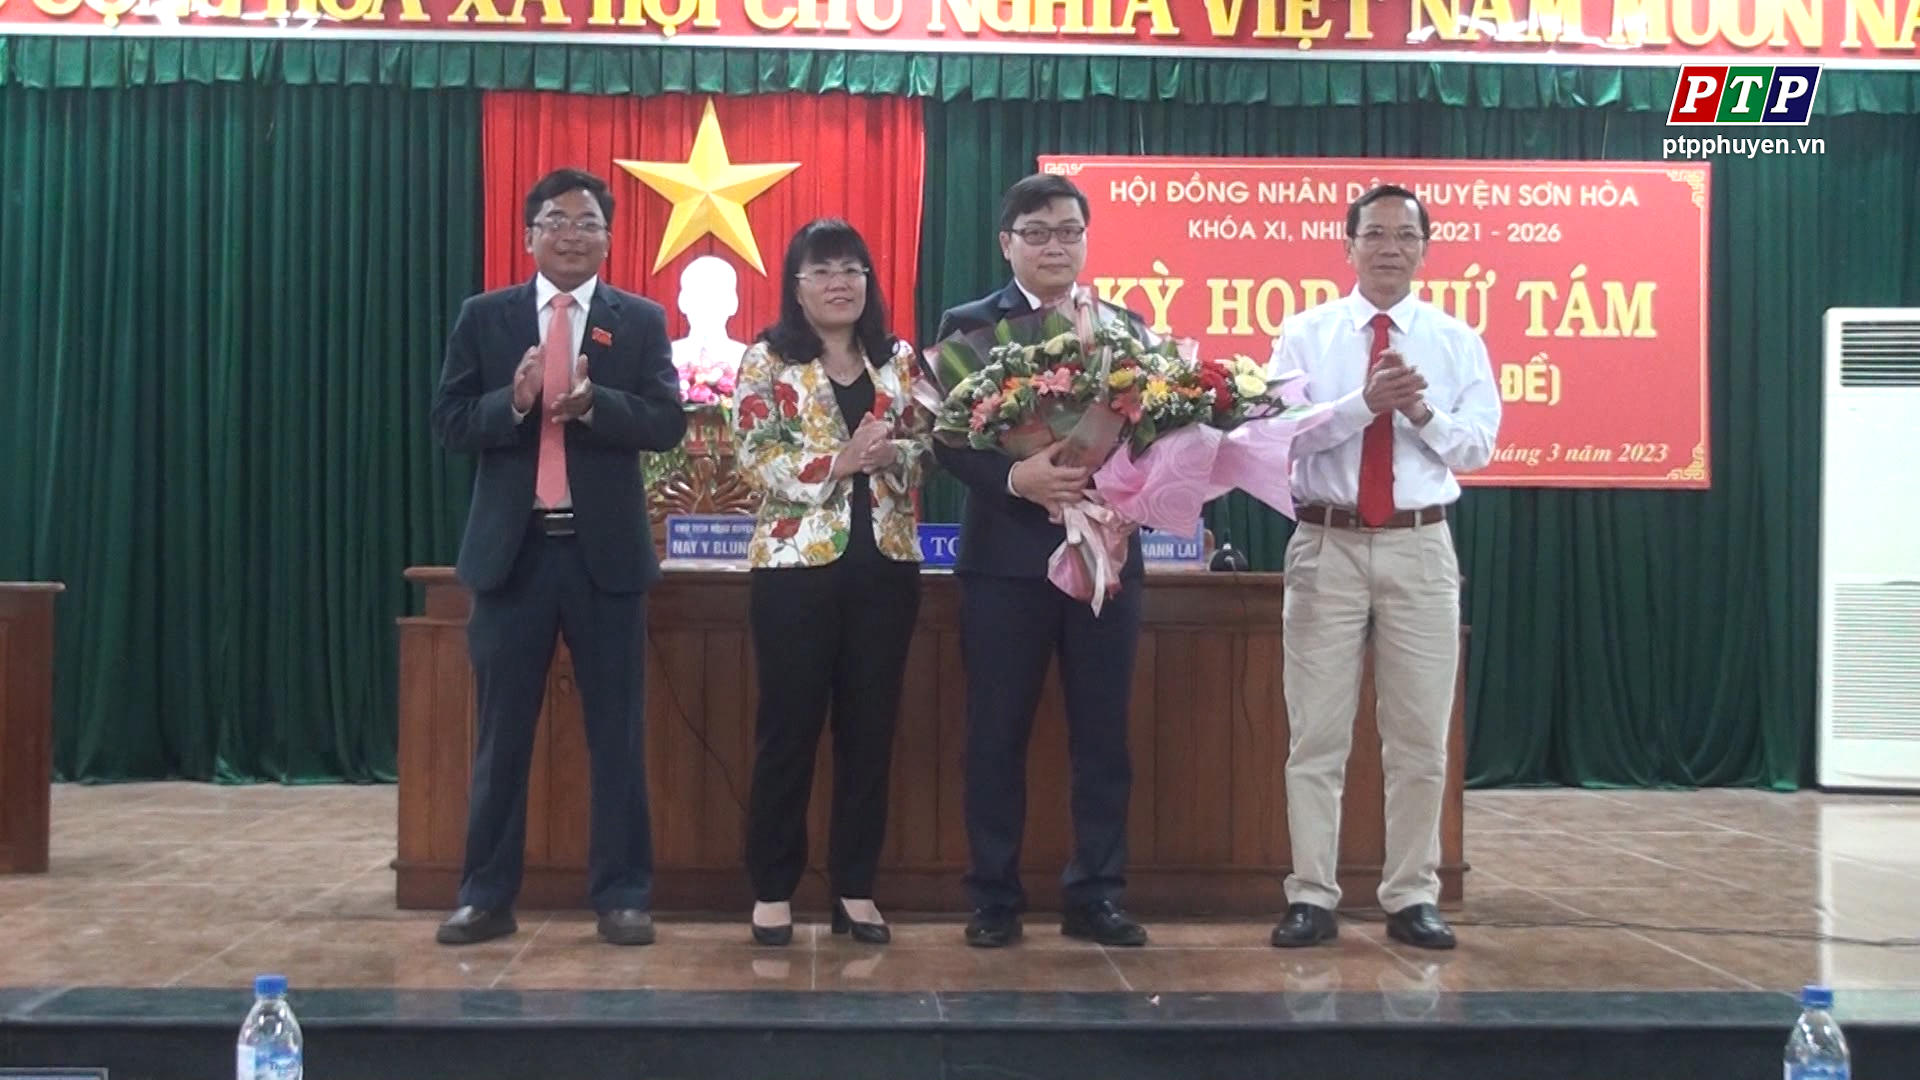 HĐND huyện Sơn Hòa tổ chức kỳ họp thứ Tám, bầu bổ sung Chủ tịch UBND huyện